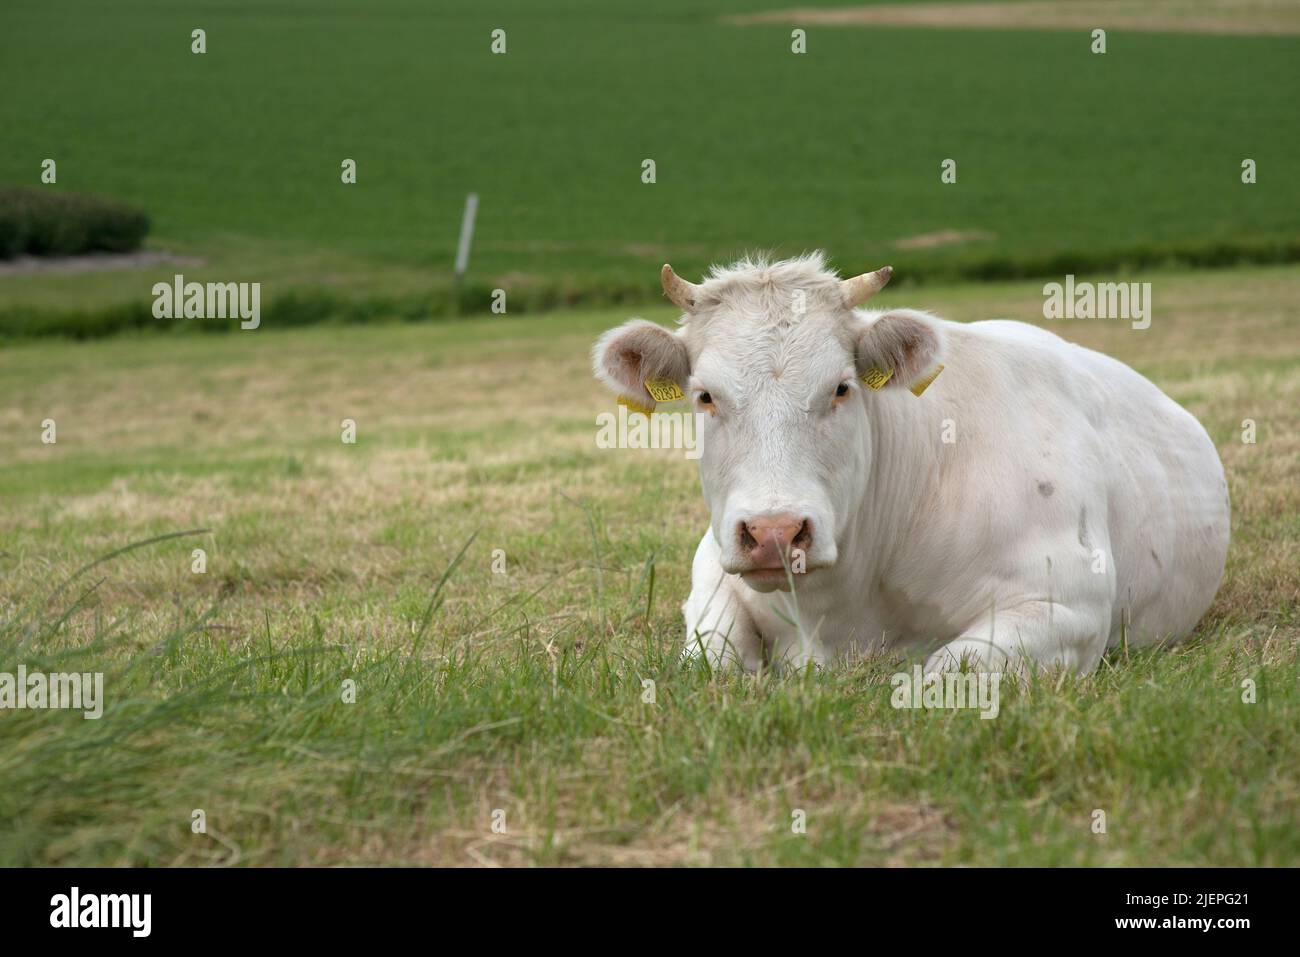 Paesi Bassi: Una vacca bianca che ruminava nel suo prato dopo una giornata di pascolo, producendo nel frattempo carne e latte destinati alla produzione di alimenti per il consumo umano. Foto Stock